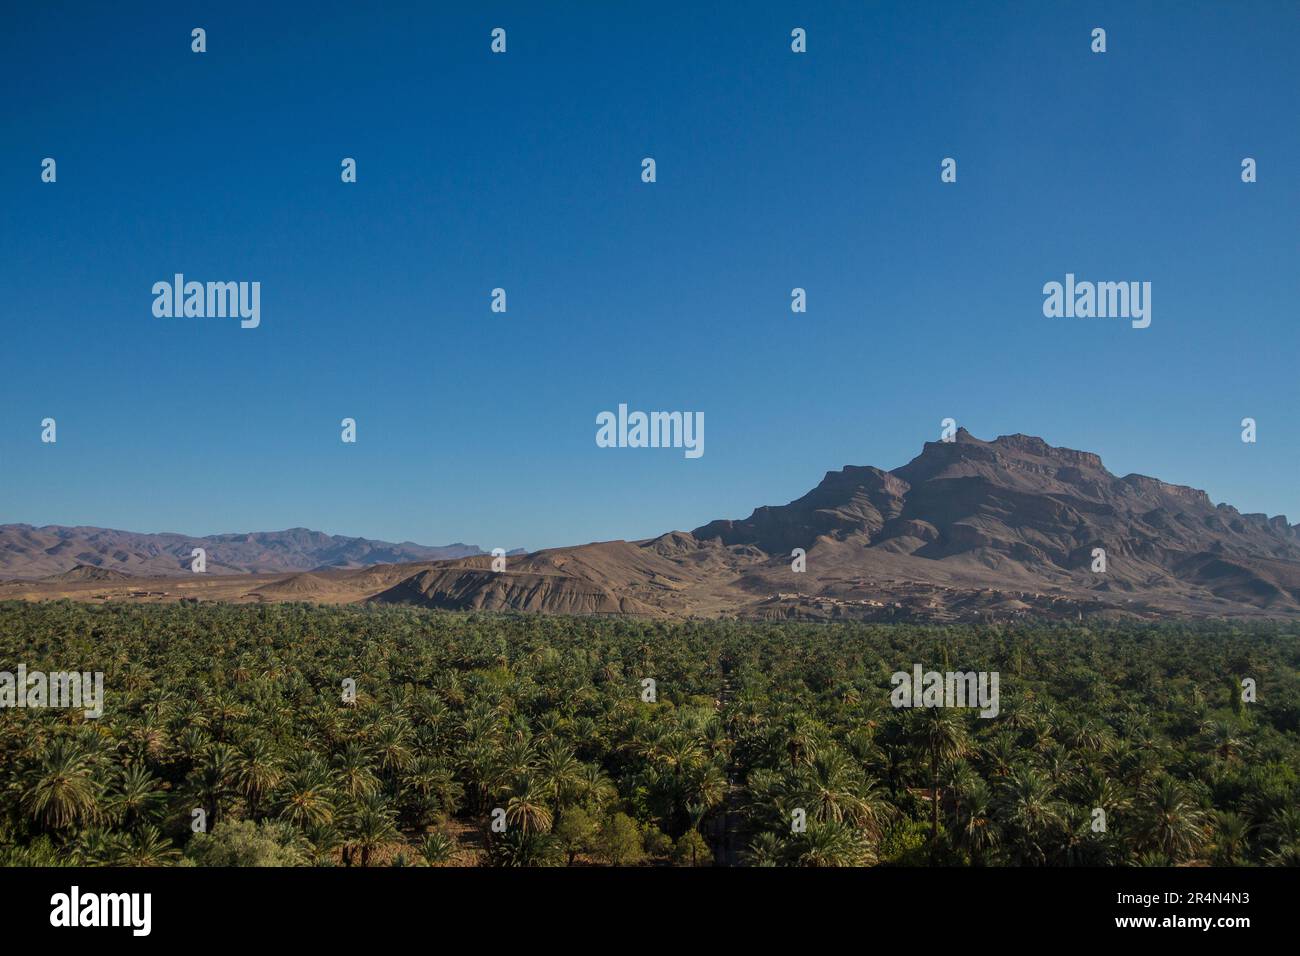 La lussureggiante oasi di palme da dattero ad Agdz, in Marocco, con il torreggiante monte Jbel Kissane sullo sfondo che crea un panorama contrastante. Foto Stock